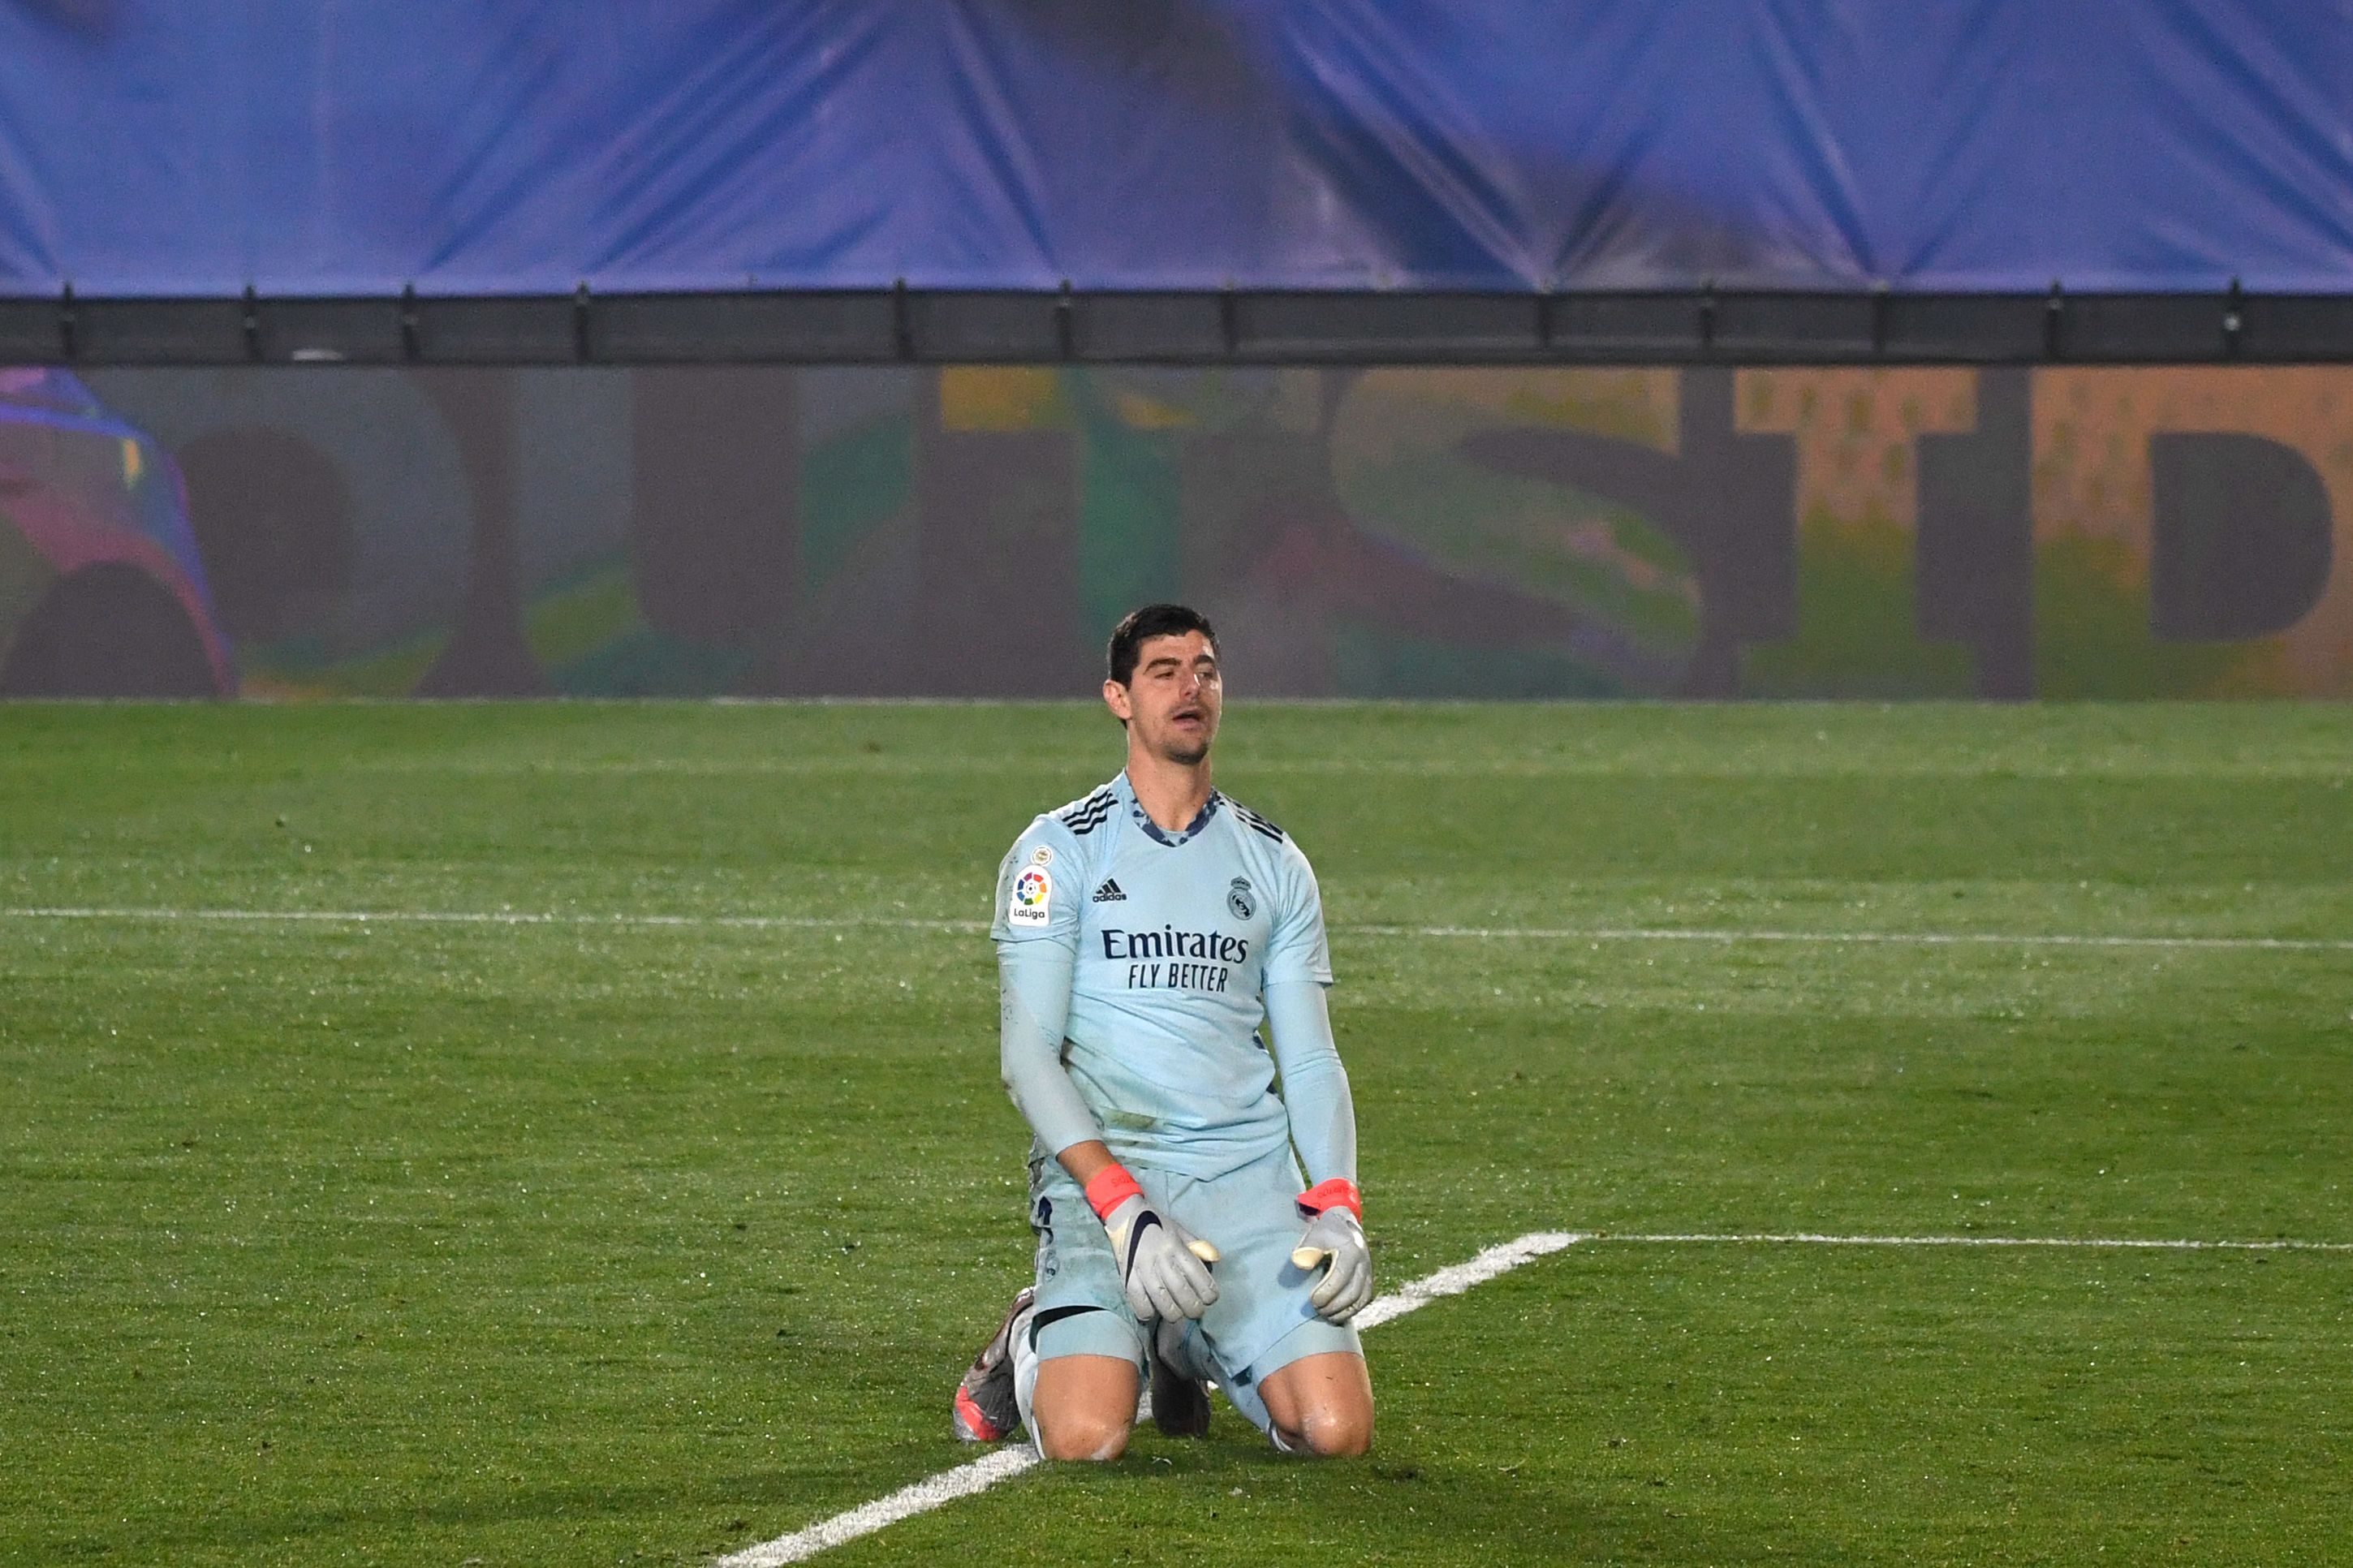 El guardameta del Real Madrid, Thibaut Courtois, luce desconsolado tras una de las dos anotaciones con las que el Alavés derrotó 1-2 a su equipo. (Foto Prensa Libre: AFP)